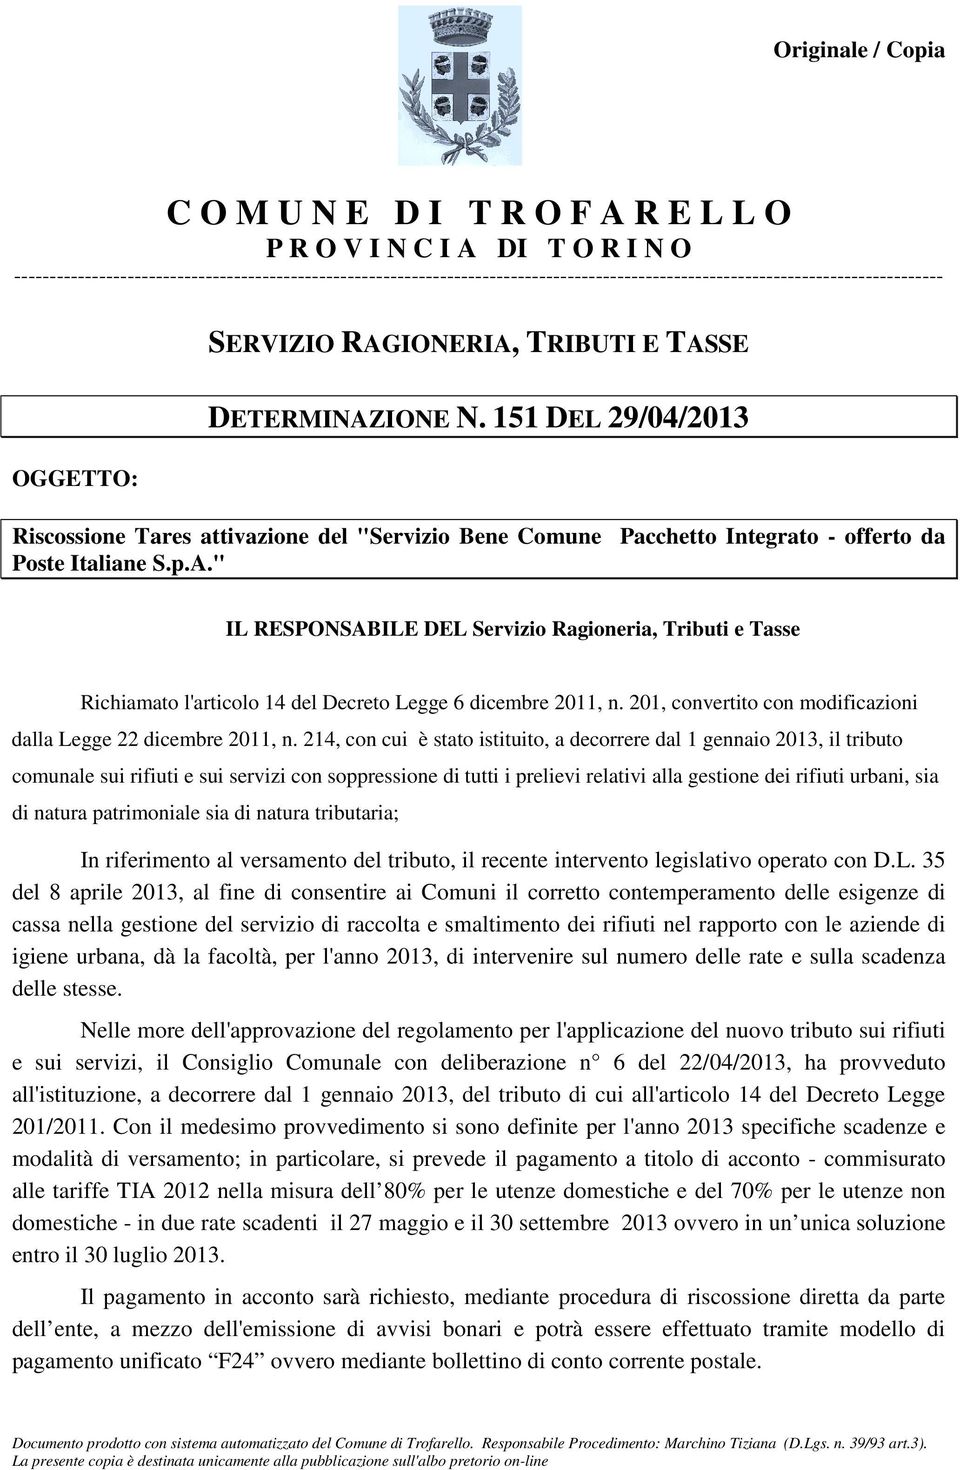 151 DEL 29/04/2013 Riscossione Tares attivazione del "Servizio Bene Comune Pacchetto Integrato - offerto da Poste Italiane S.p.A.